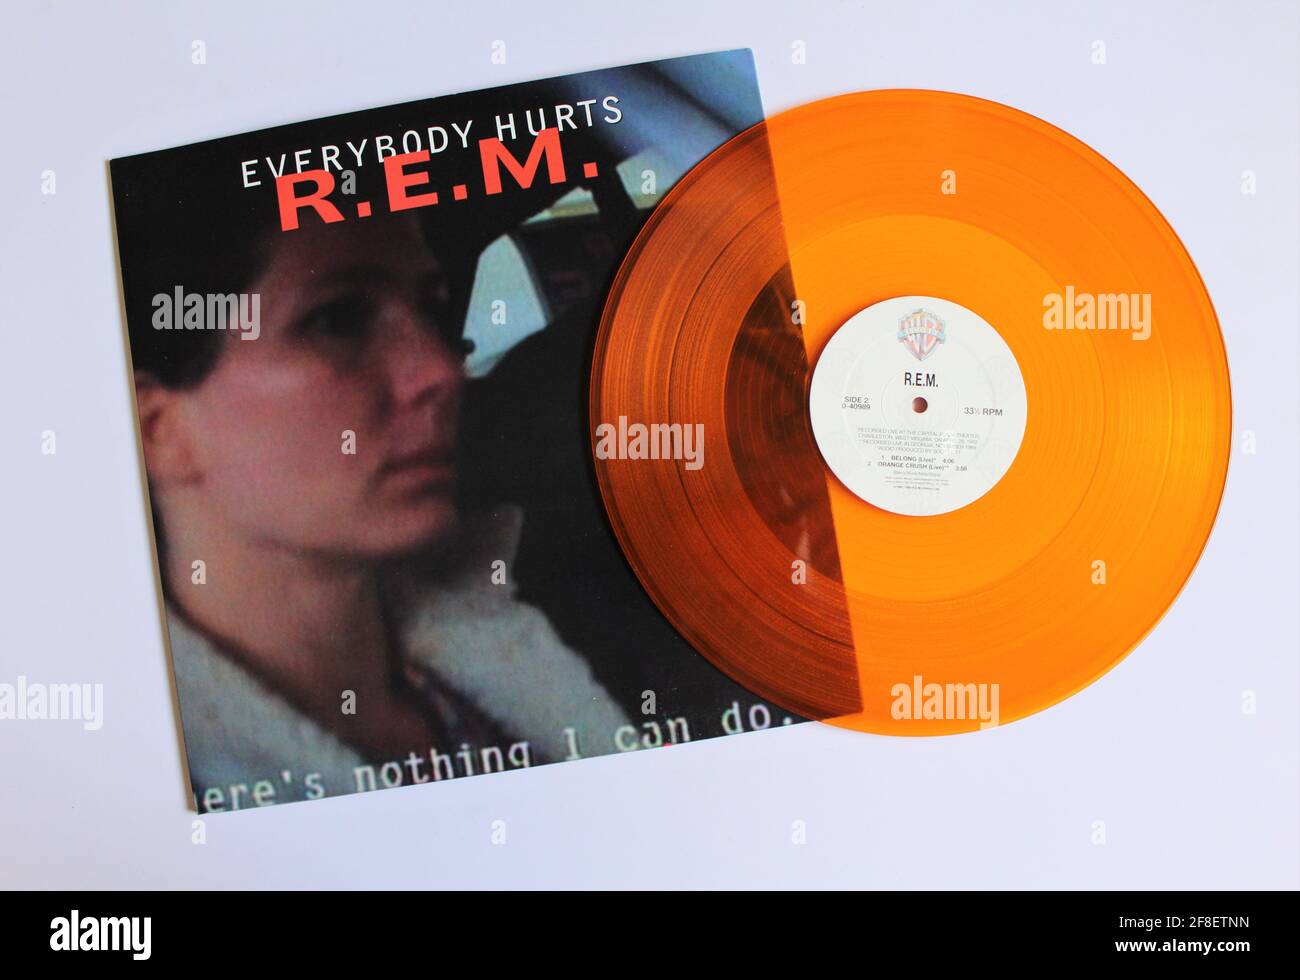 Album musicale R.E.M. della band alternative rock su disco LP in